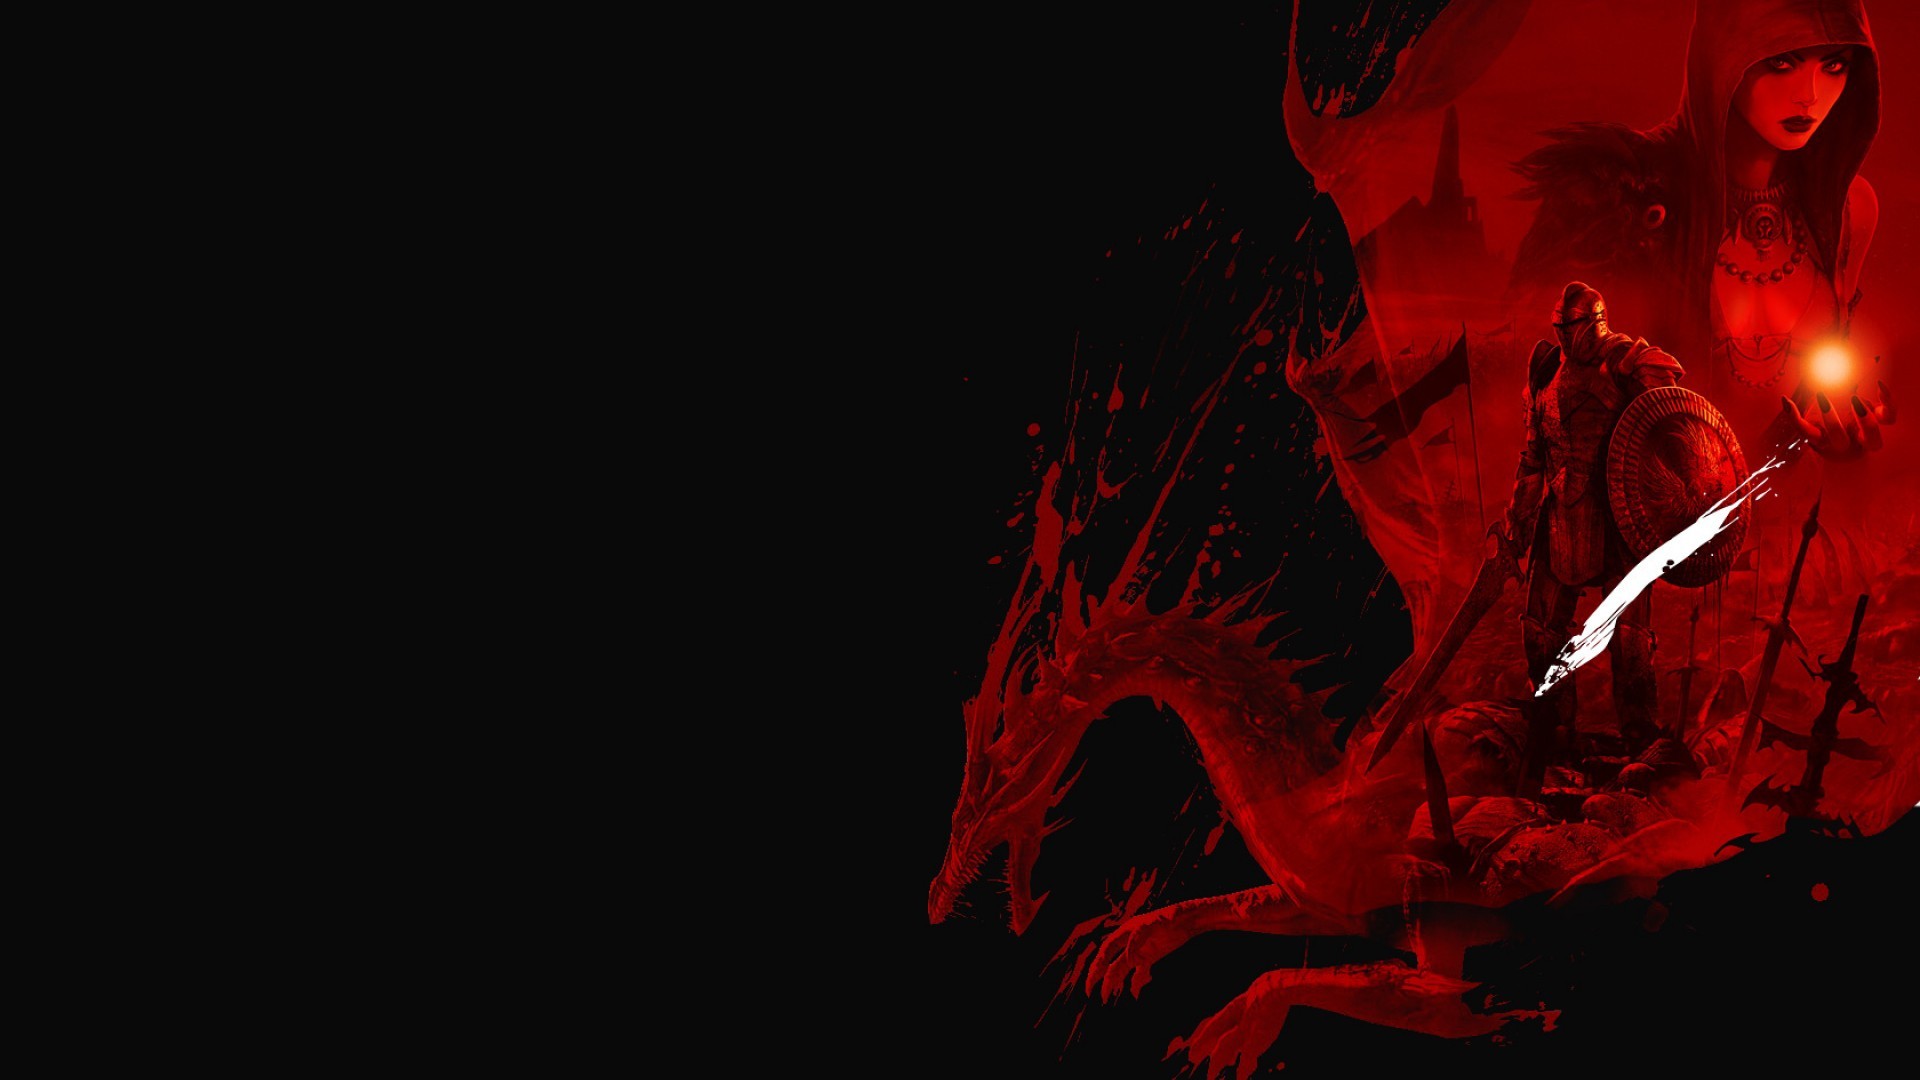 1920x1080 Red Dragon dragon black red  MasaÃ¼stÃ¼ hd geniÅ ekran .